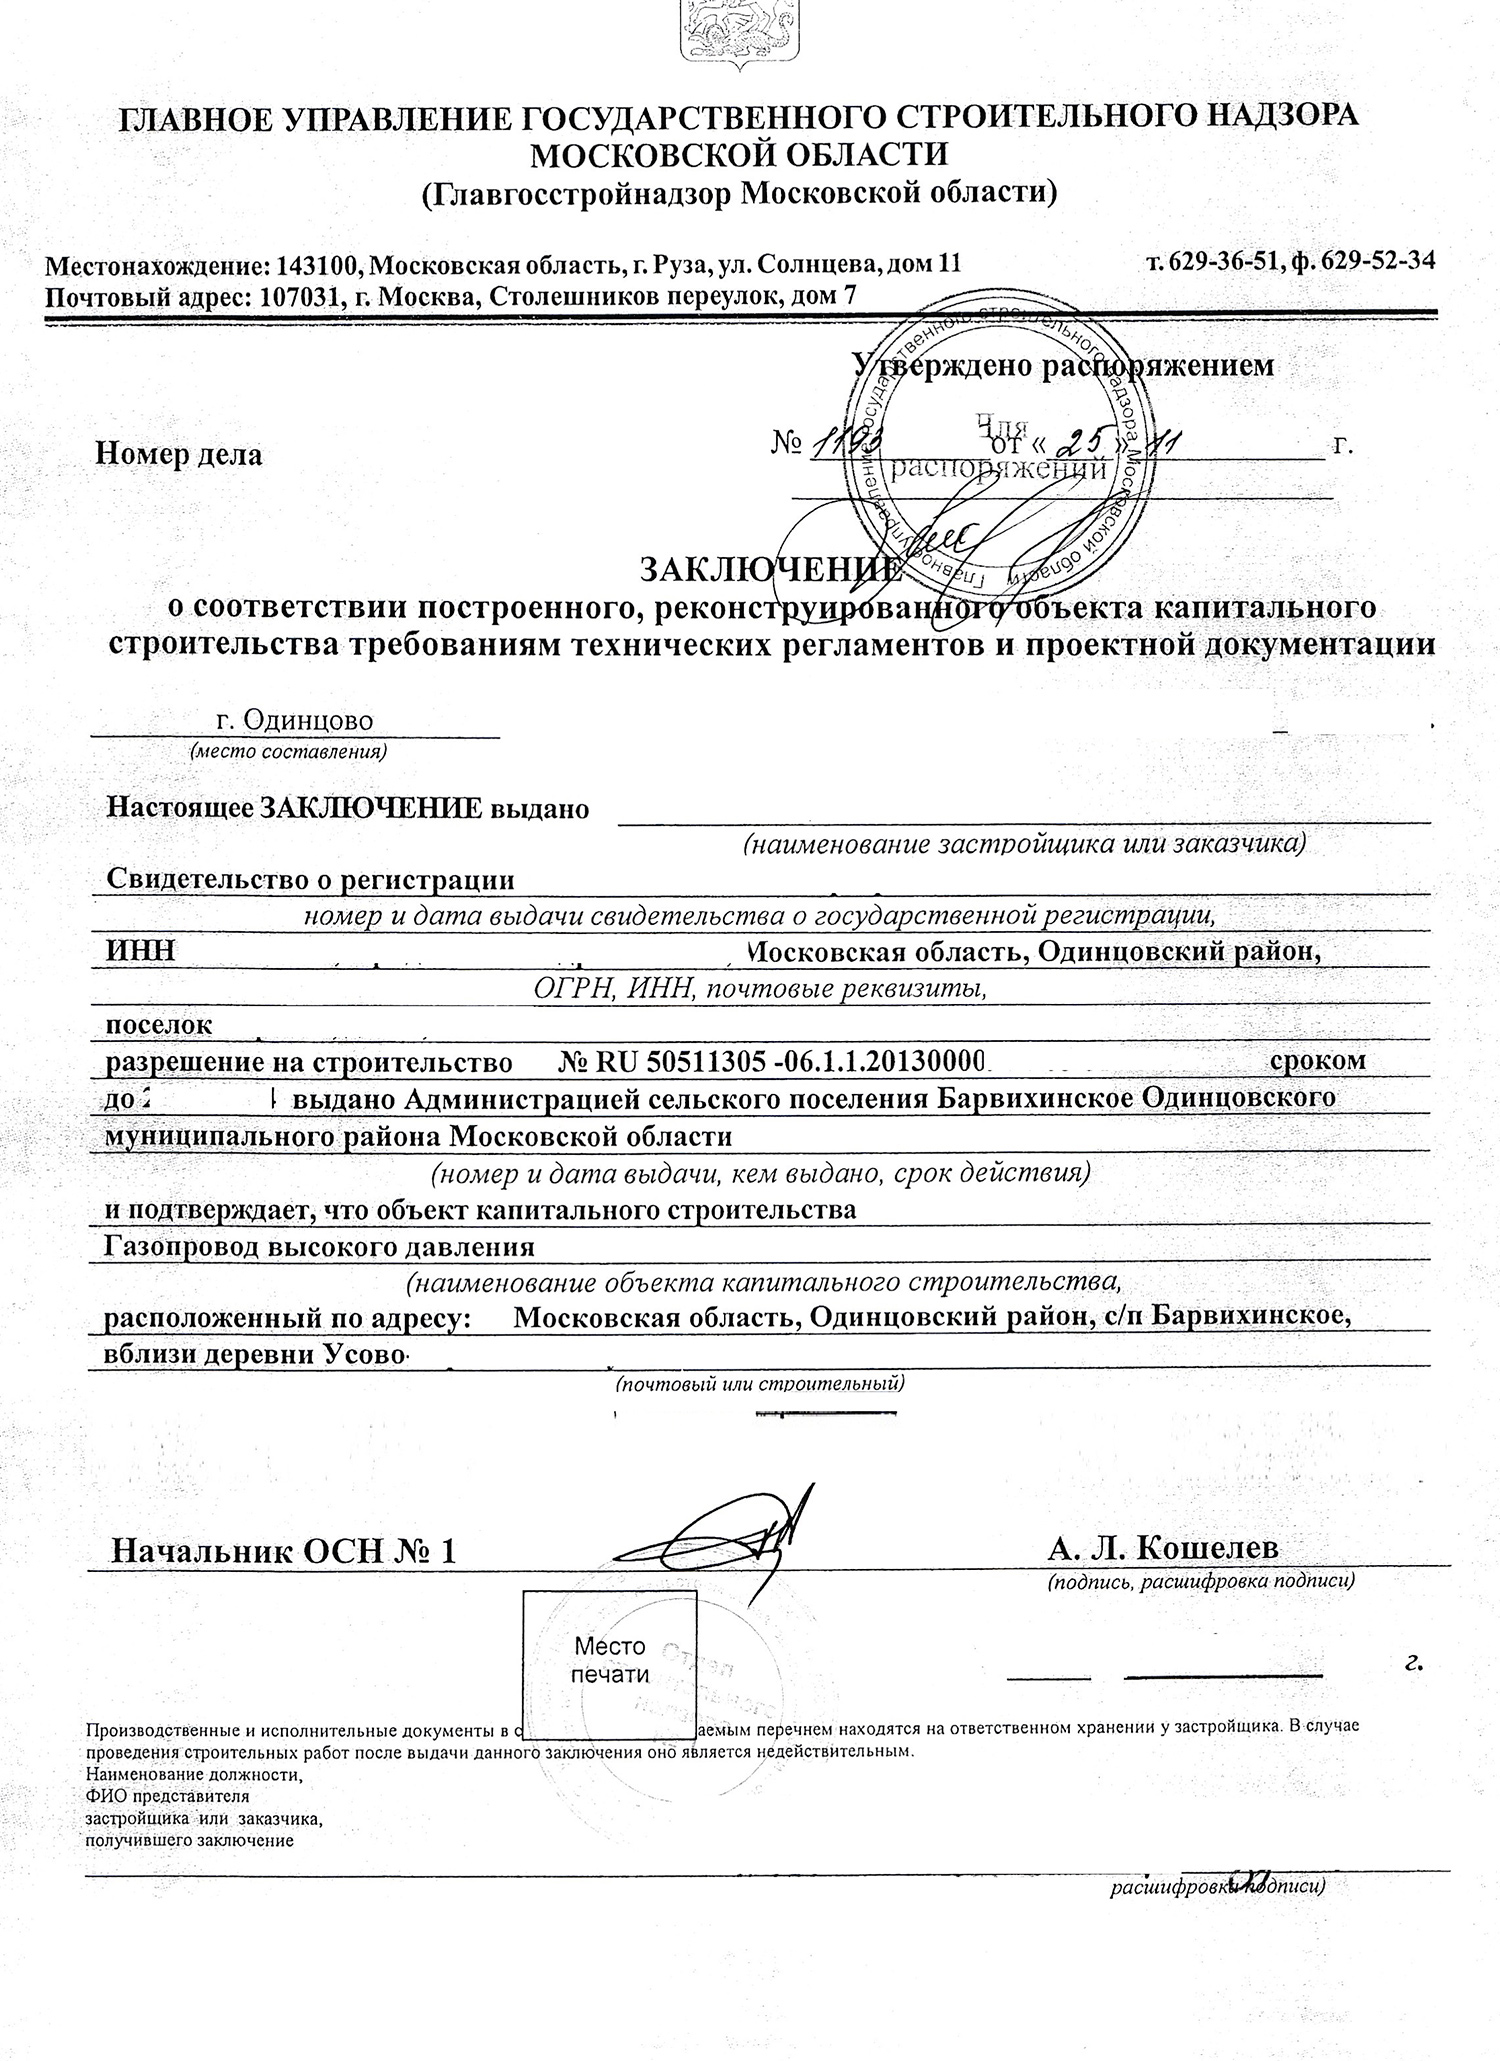 Процедура и сроки получения разрешения на работу в Московской области